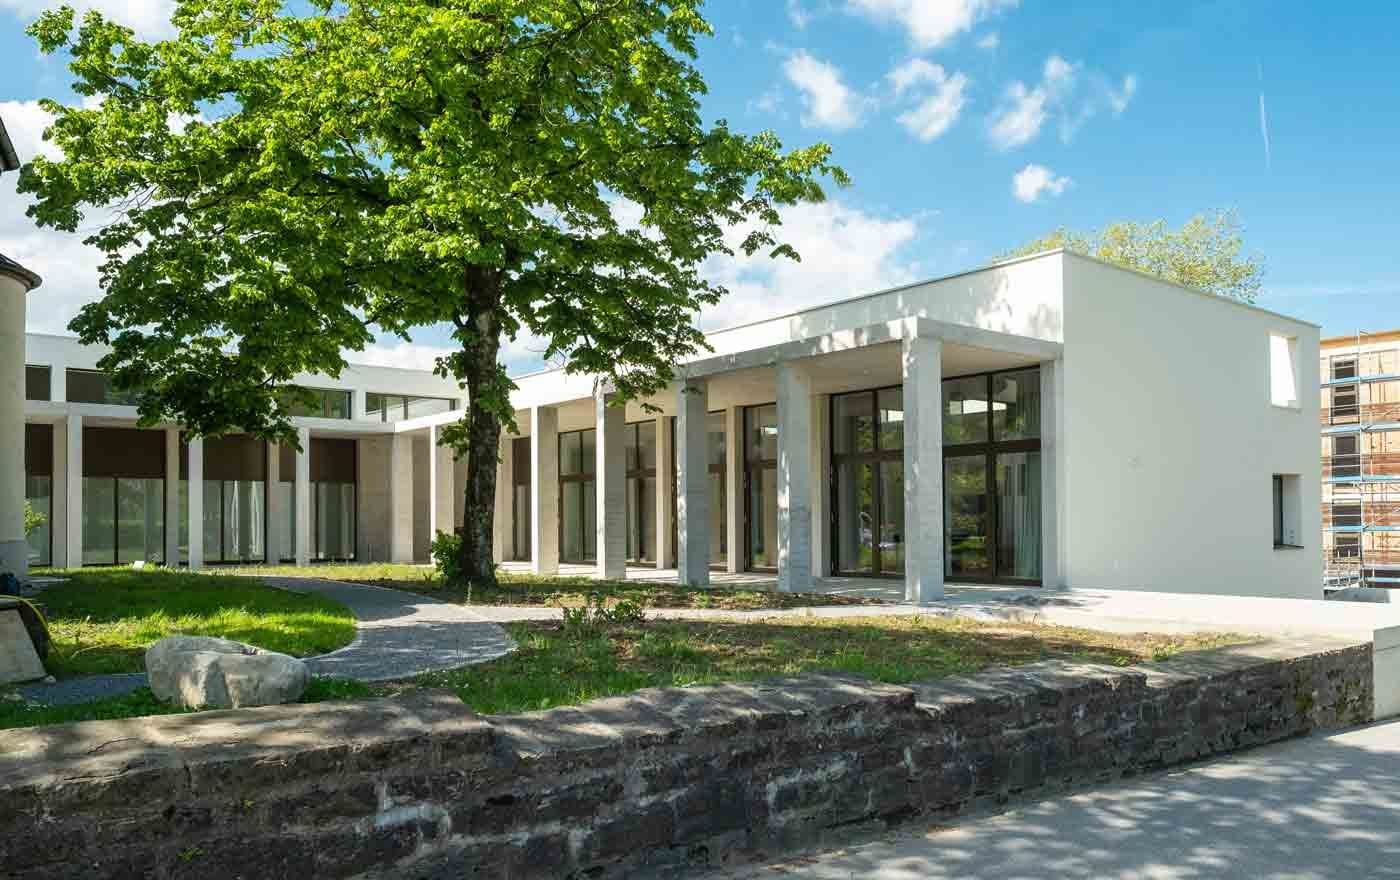 Seit 2014 in Planung, jetzt fertiggestelt: das neue Gemeindezentrum in Dornbirn. Foto: PG Dornbirn